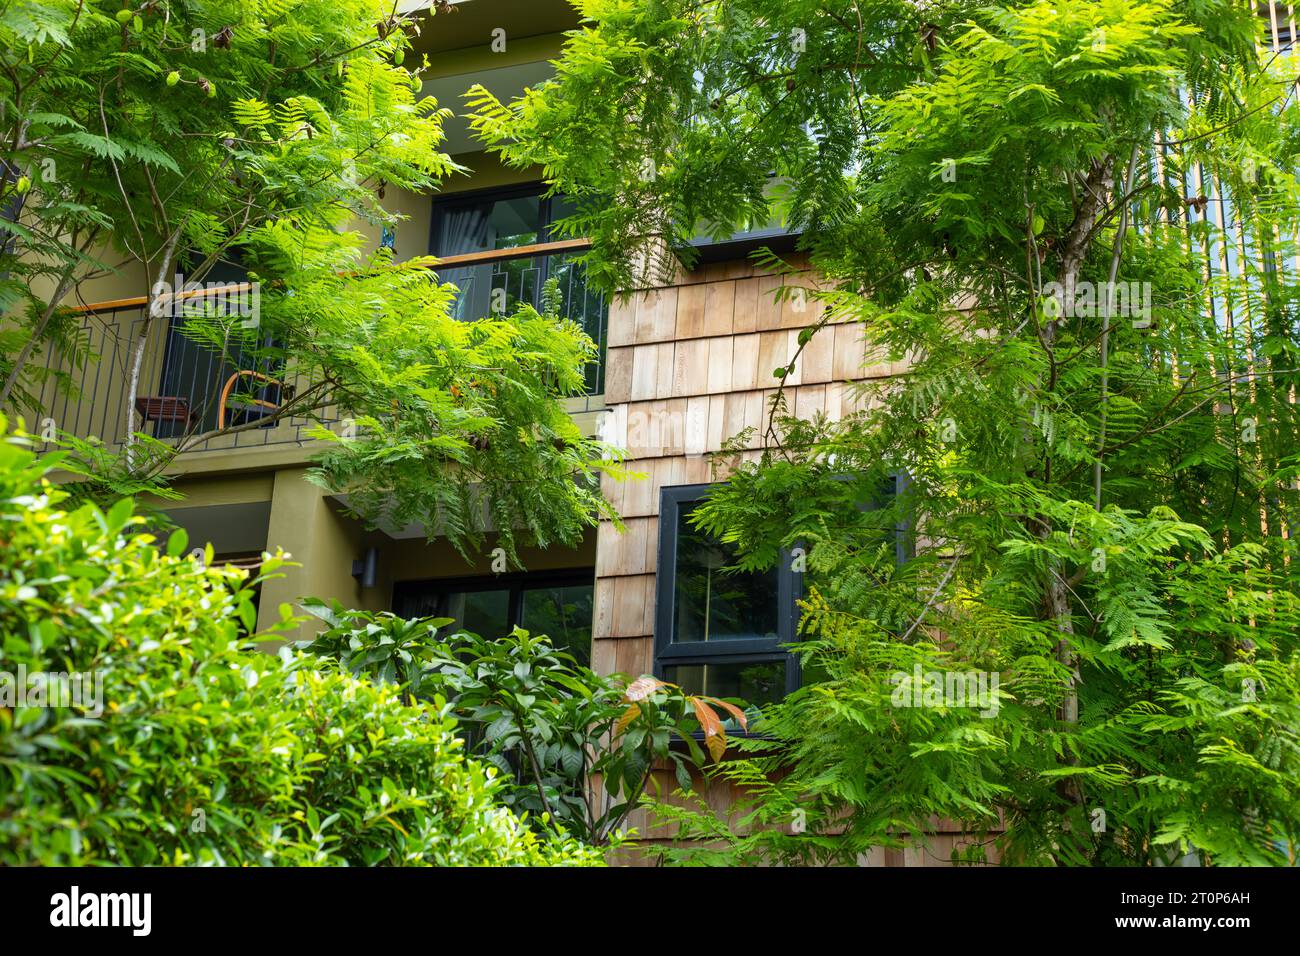 Wohnraumabdeckung mit grünem Pflanzenbaum für ein umweltfreundliches Gebäude, das energiesparendes Kühlhaus Stockfoto